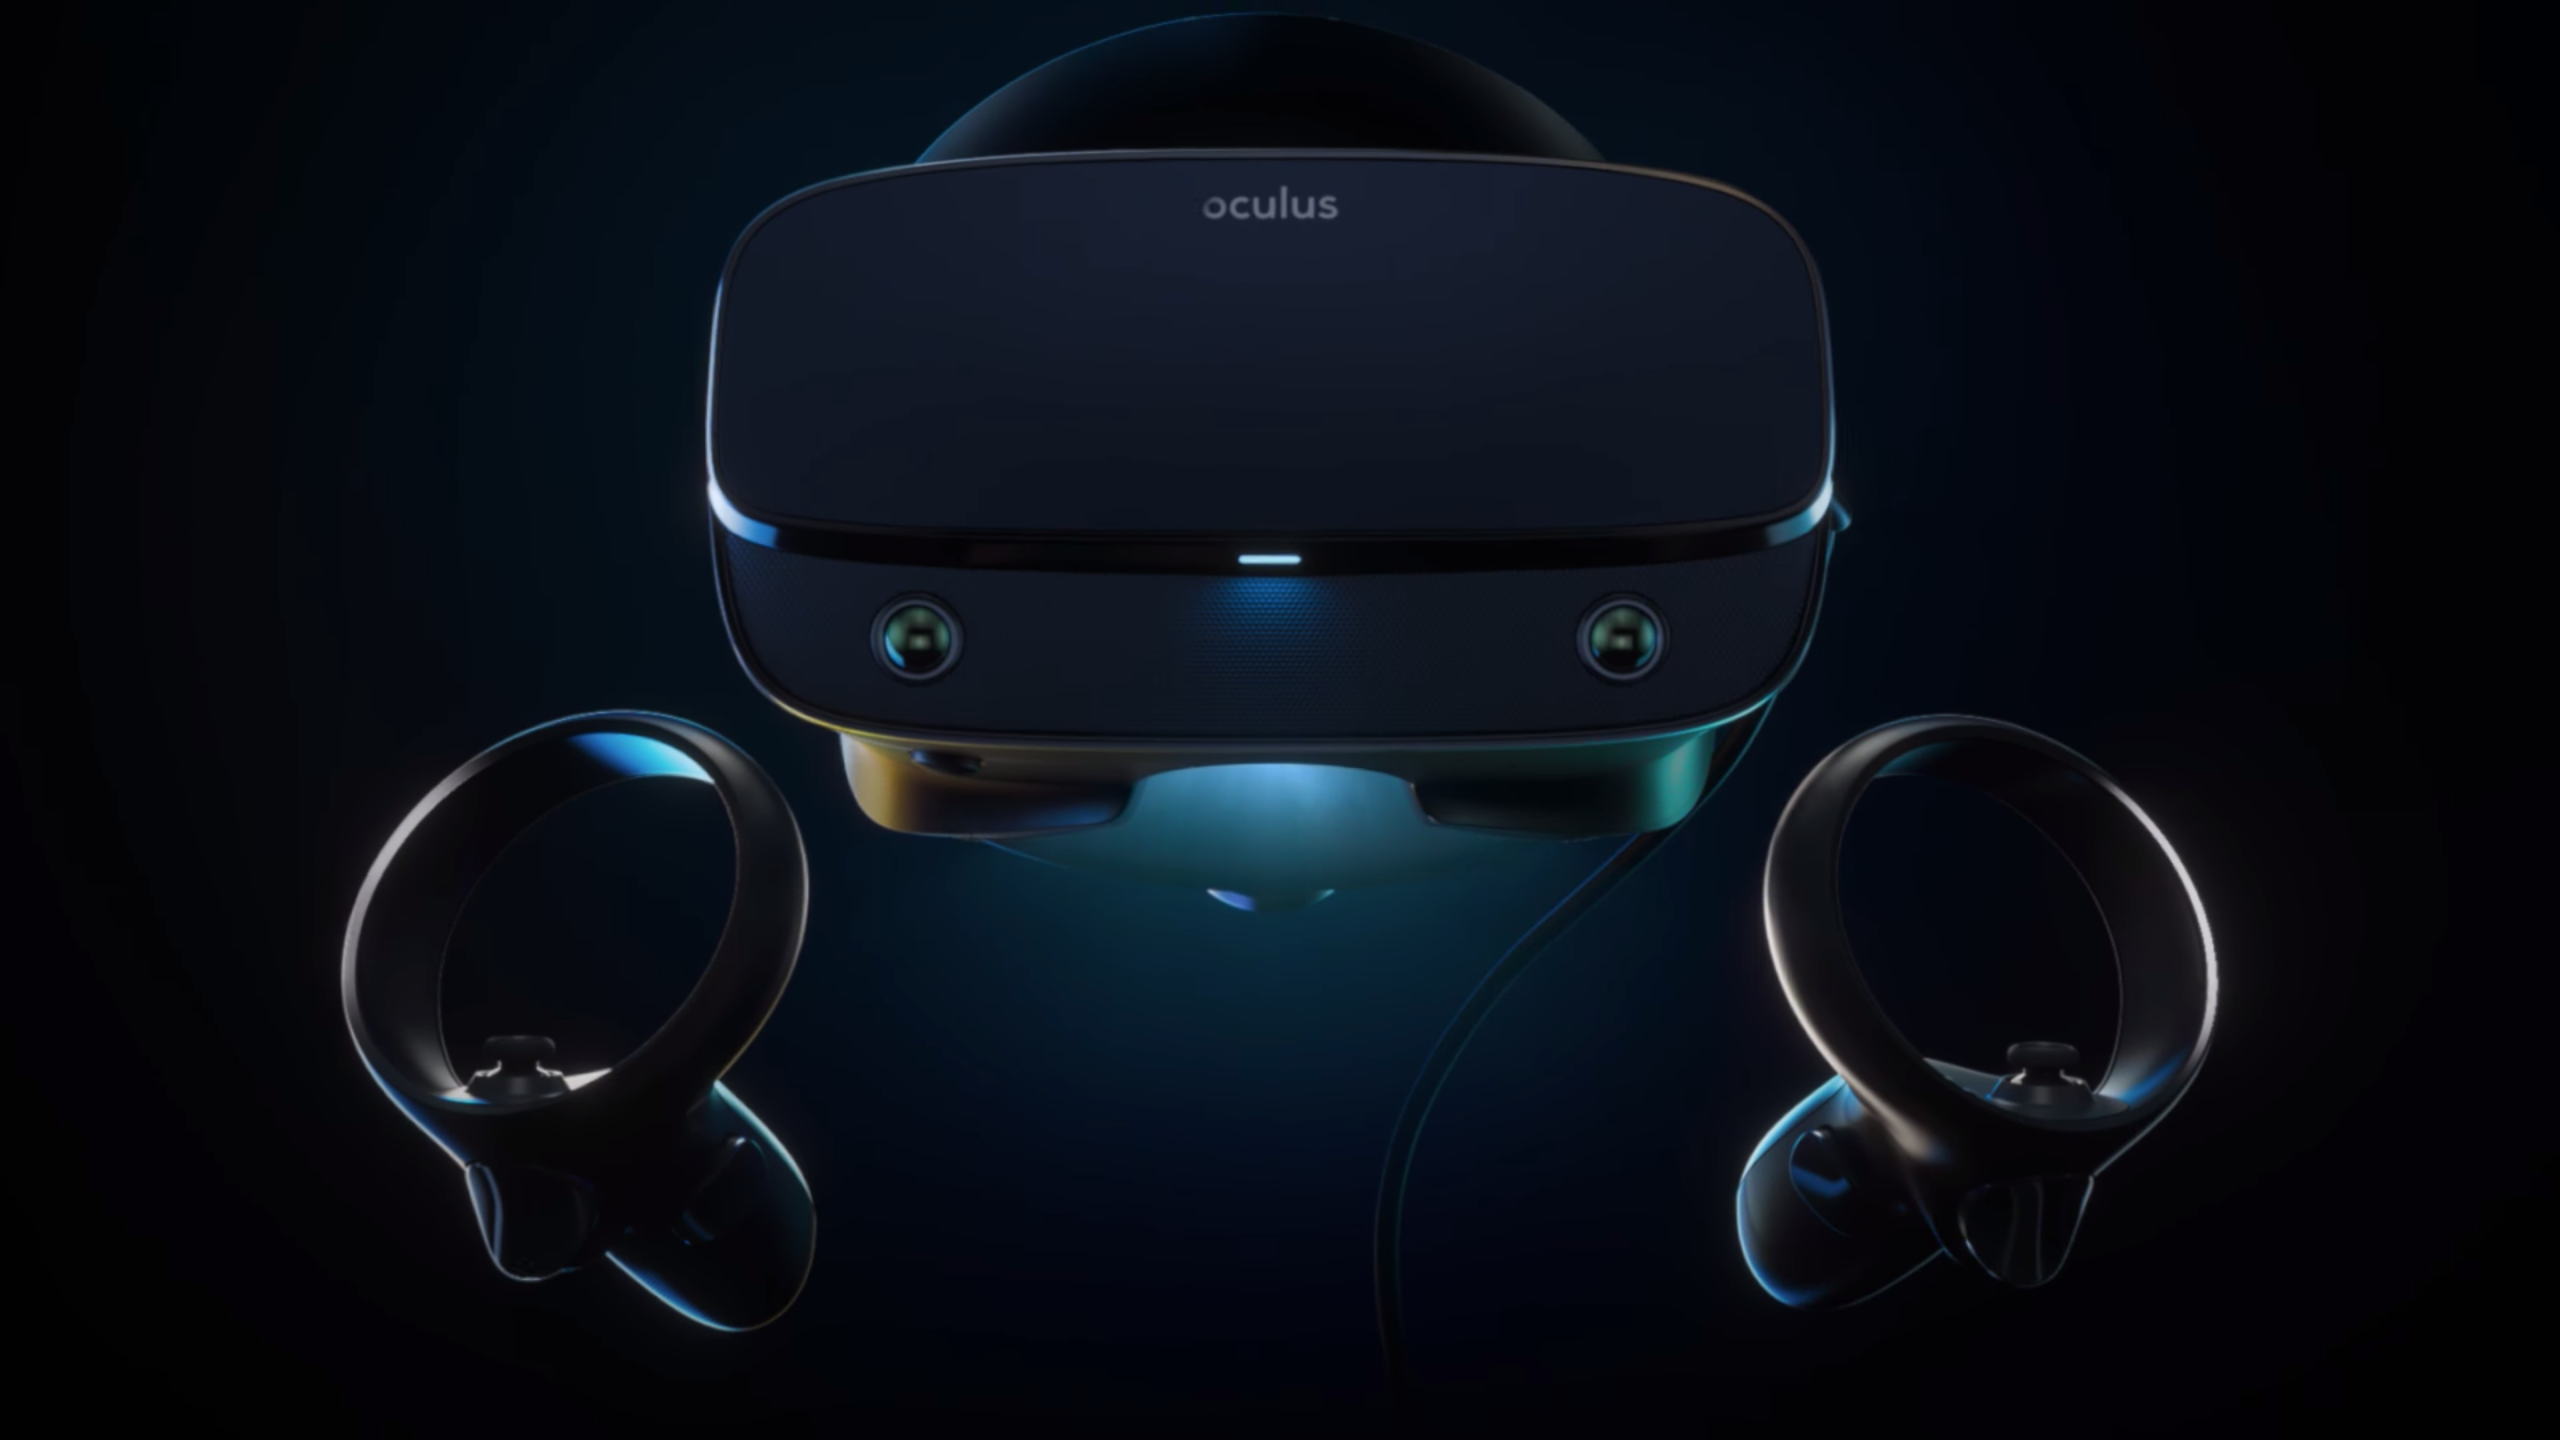 Oculusの新しいPC VRヘッドセット「Oculus Rift S」、2019年春に発売 